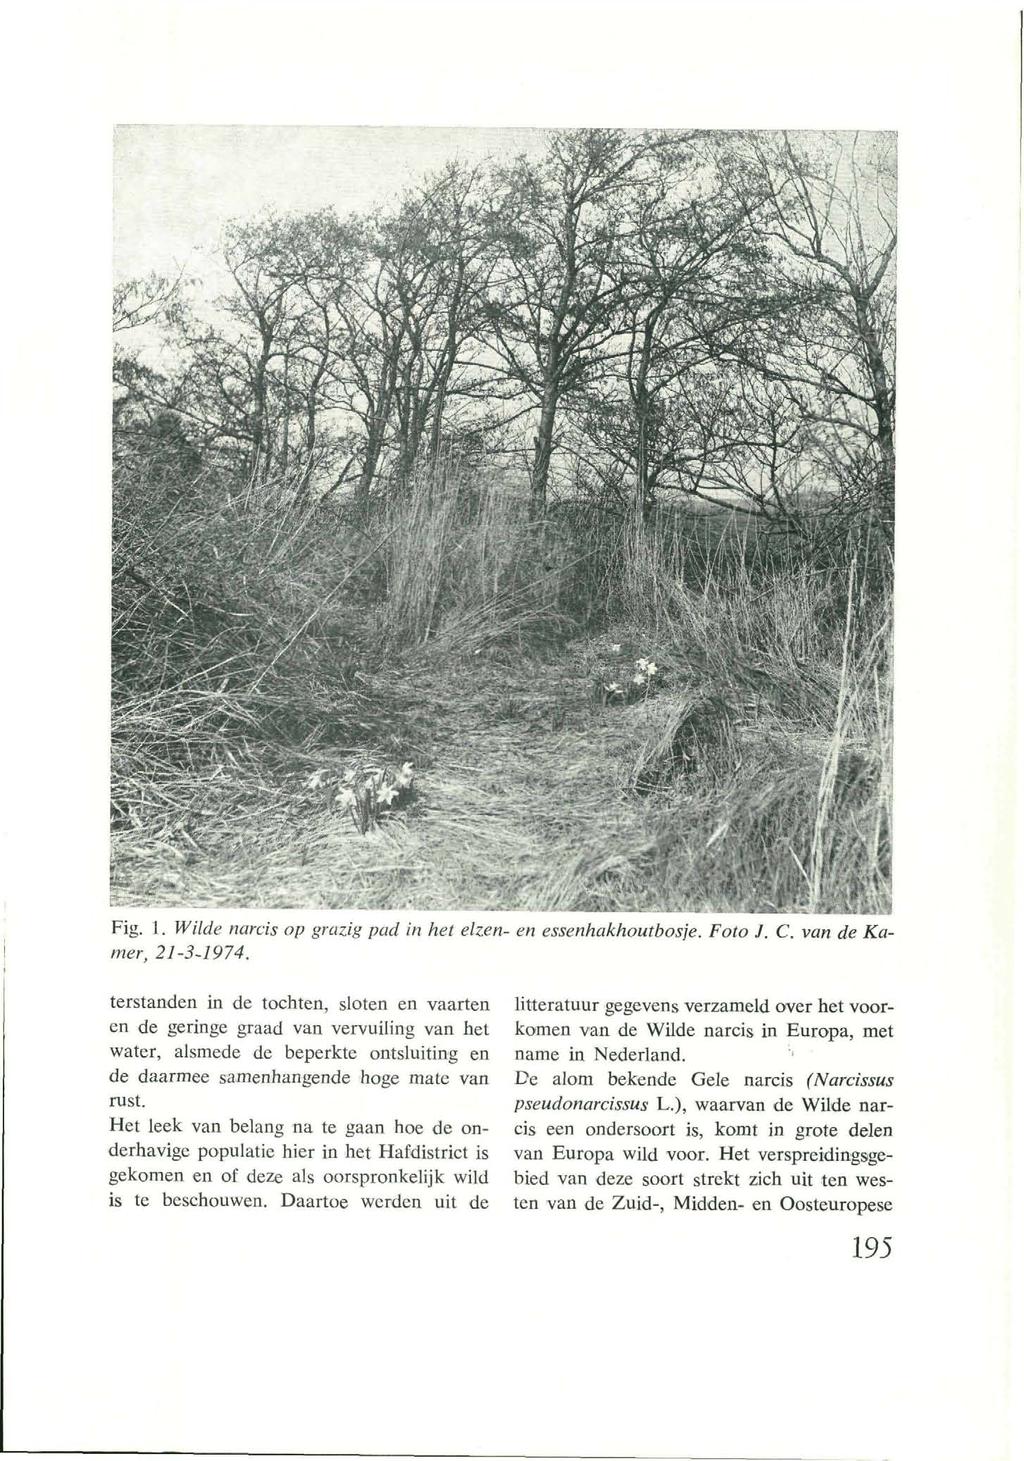 Fig. 1. Wilde narcis op grazig pad in het elzen- en essenhakhoutbosje. Foto J. C. van de Kamer, 21-3-1974.